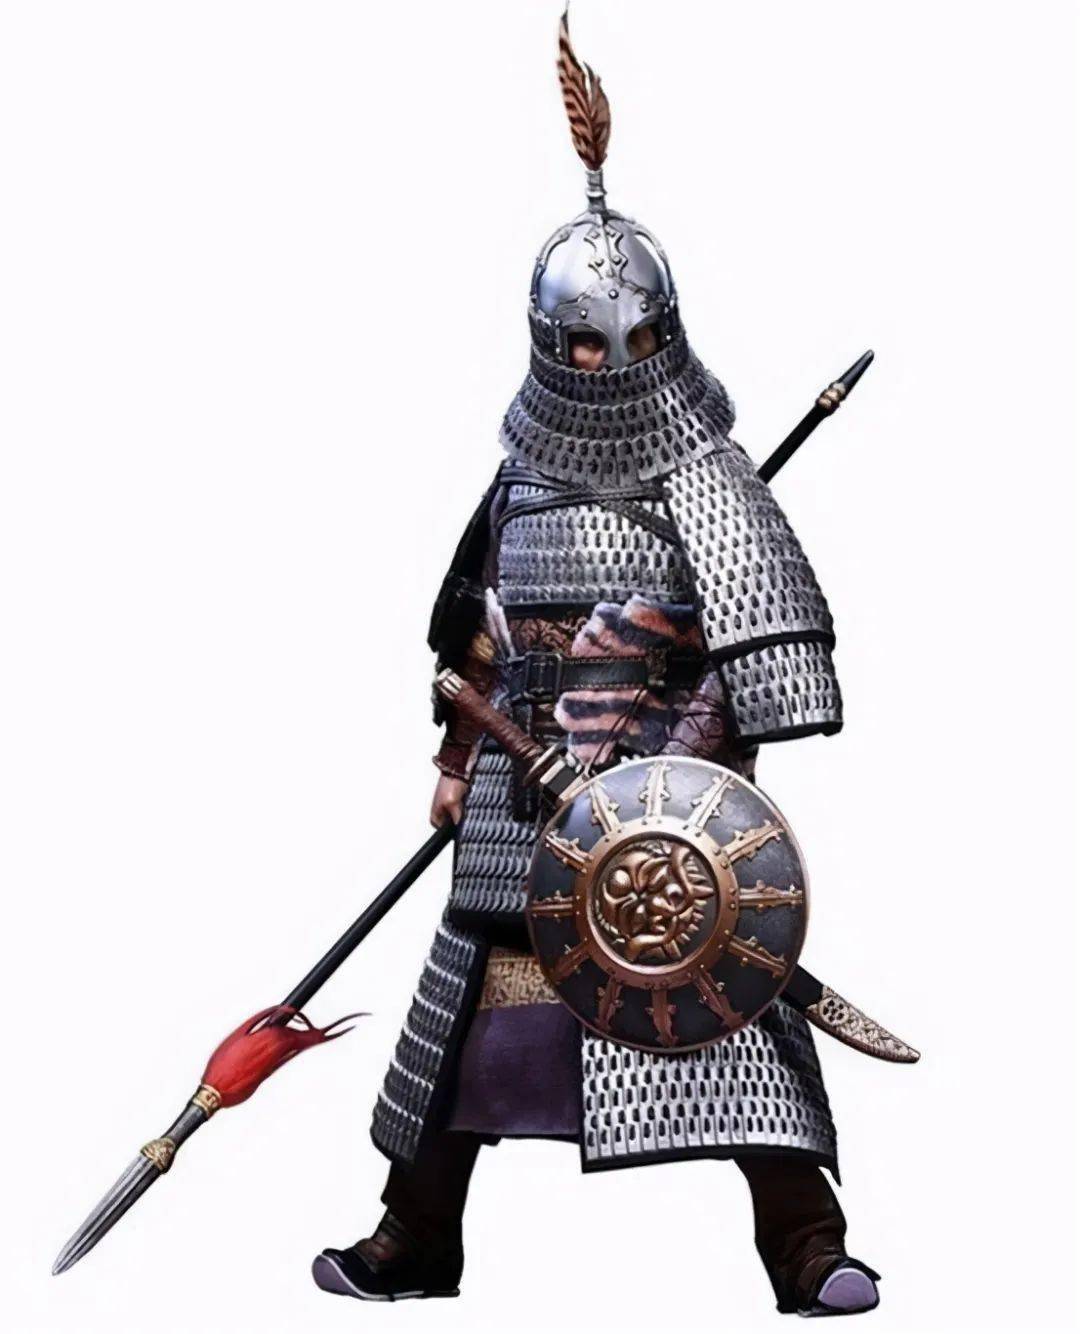 元朝盔甲元代起于蒙古游牧民族,为了保持强大的机动性,元代对铠甲的